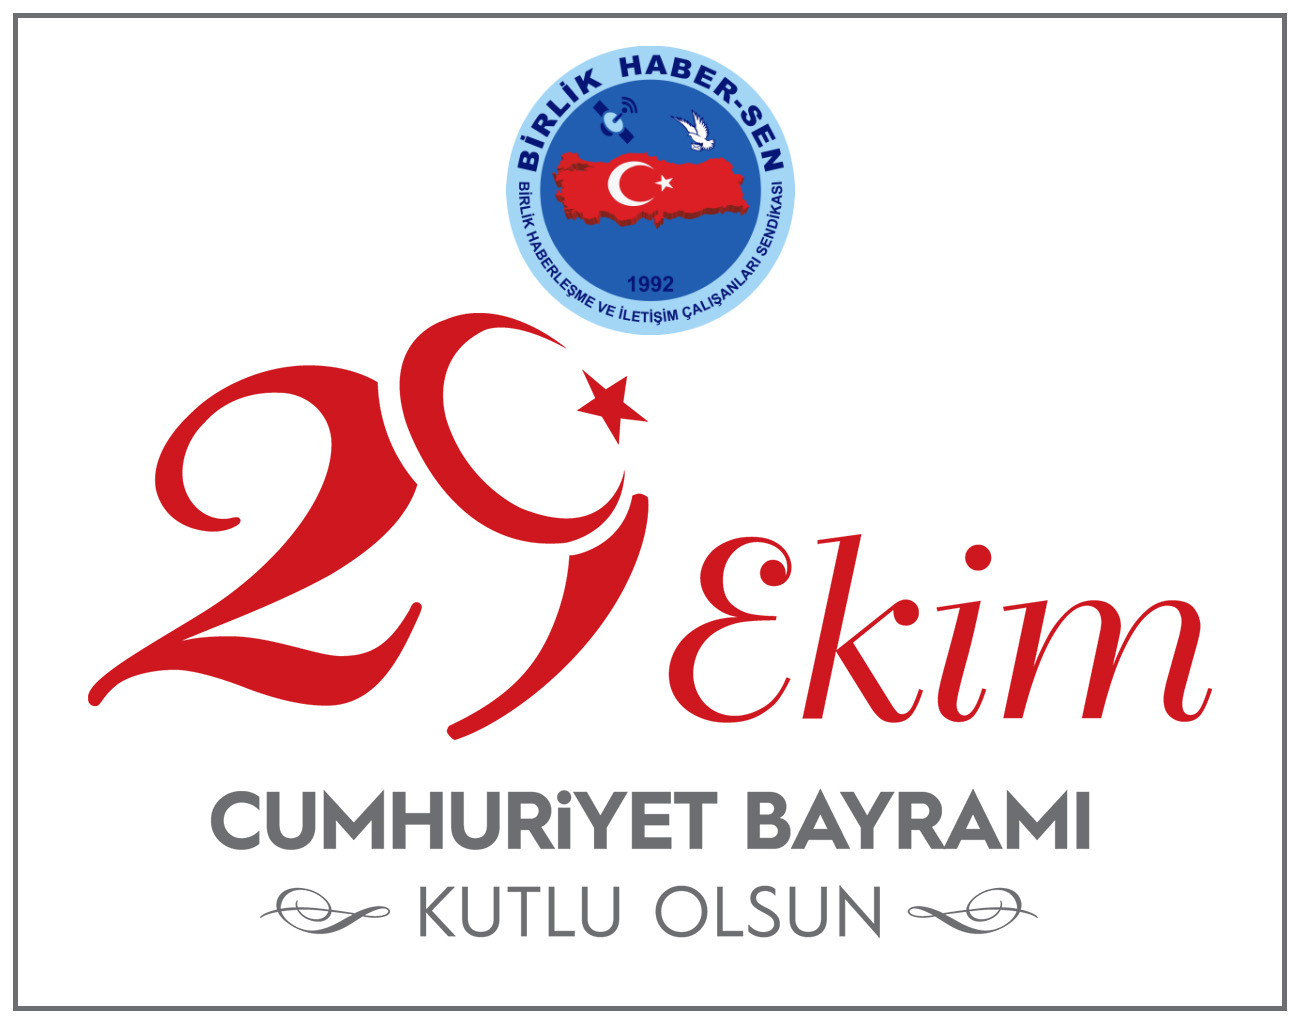 Asırlık Çınar Türkiye Cumhuriyeti 98 Yaşında